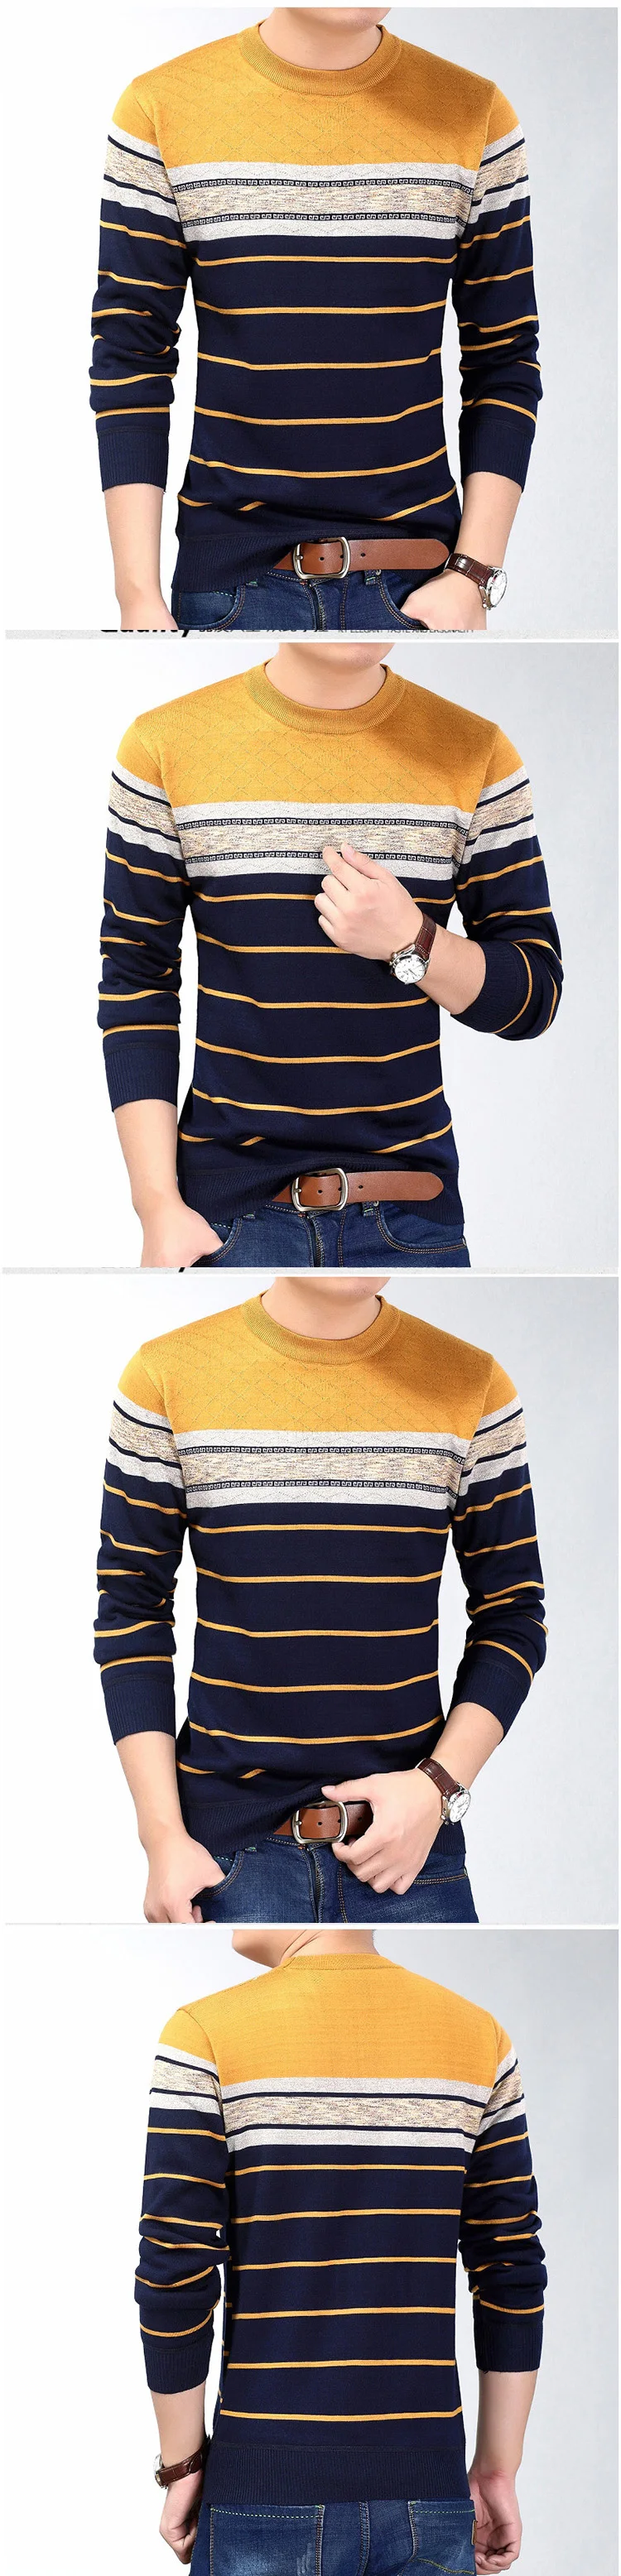 Мода 2019 г. повседневная одежда социального Фитнес Бодибилдинг полосатые футболки для мужчин футболка трикотажная футболка пуловер свитер